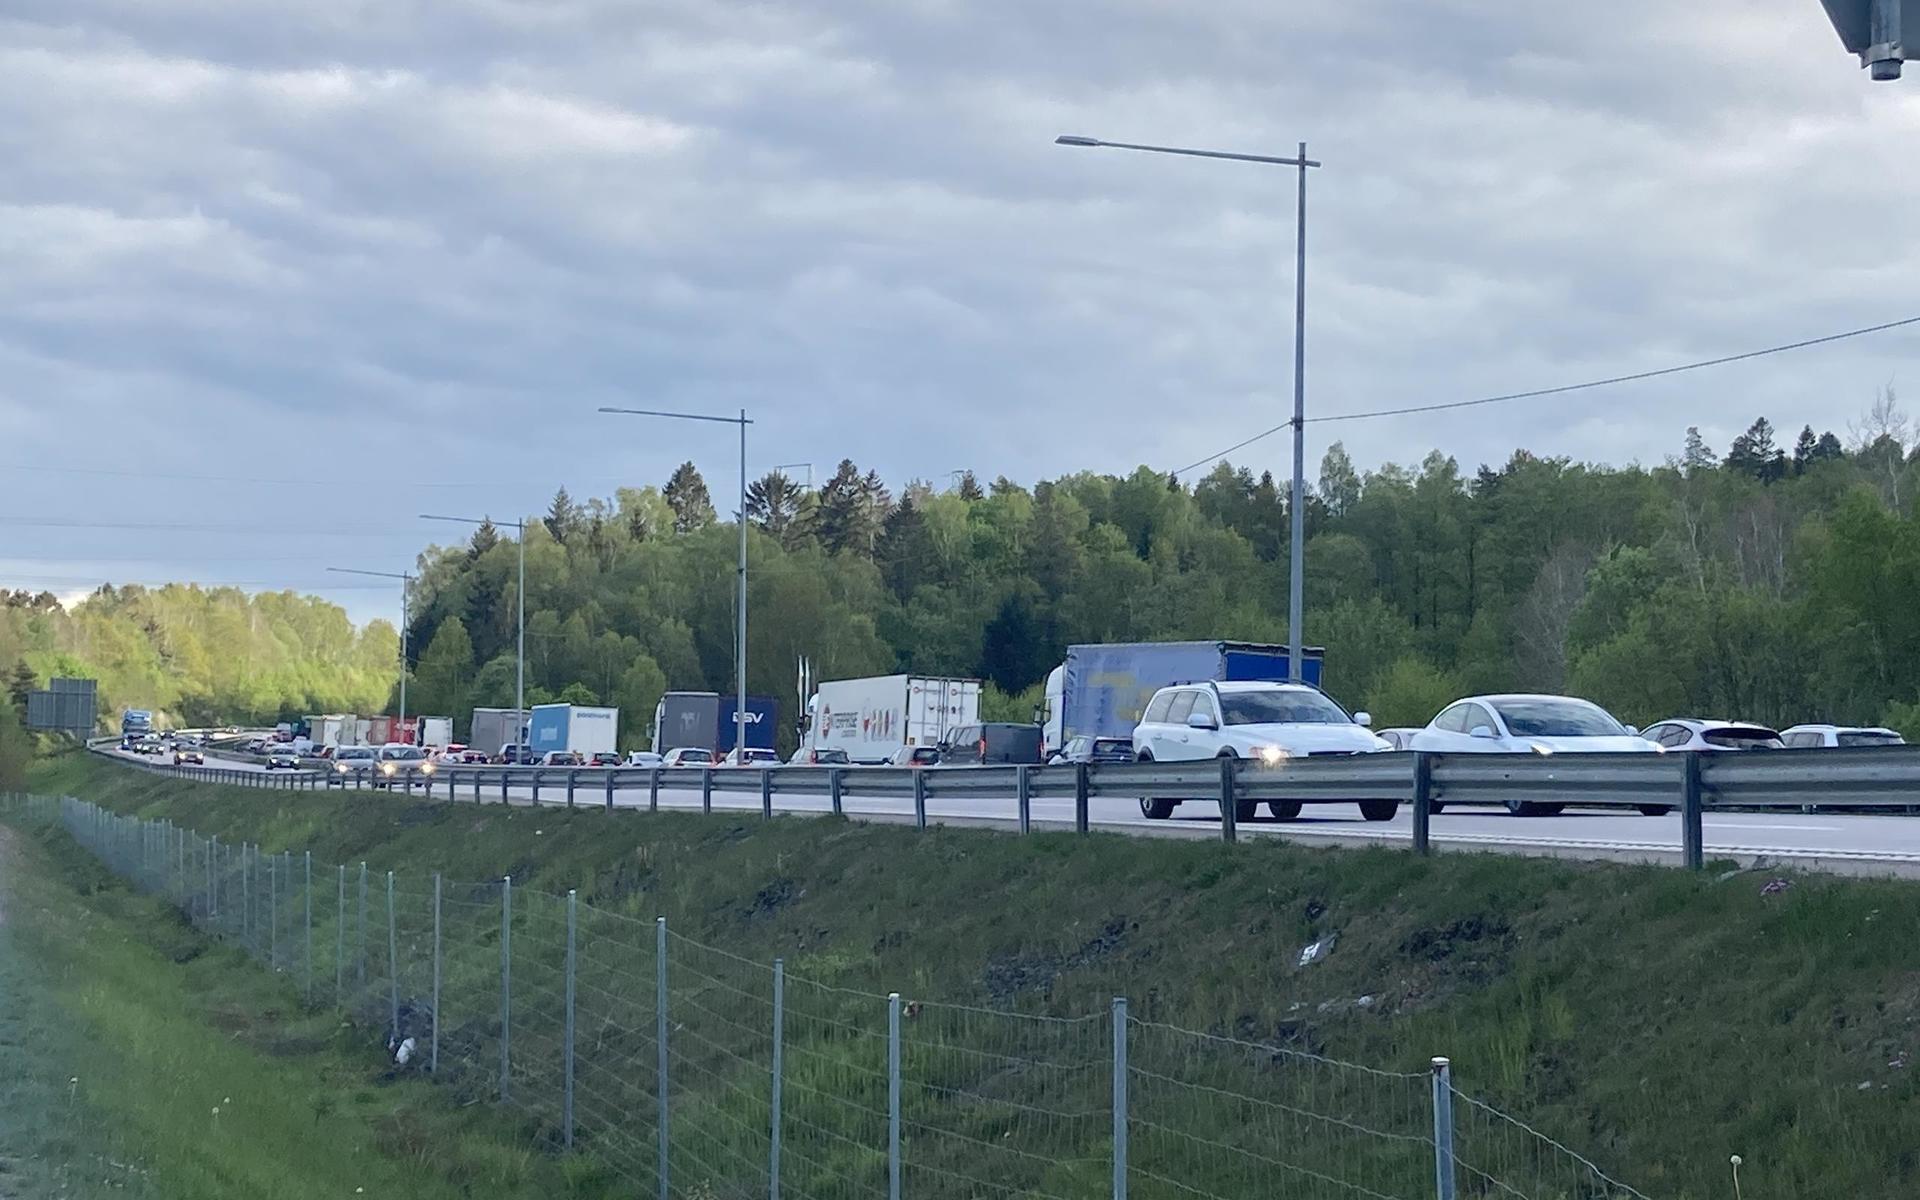 Olycka med tre lastbilar på E6 vid Sandsjöbacka vid kommungränsen mellan Mölndal och Kungsbacka. Bilden är tagen vid Kålleredsmotet där köerna är långa. 